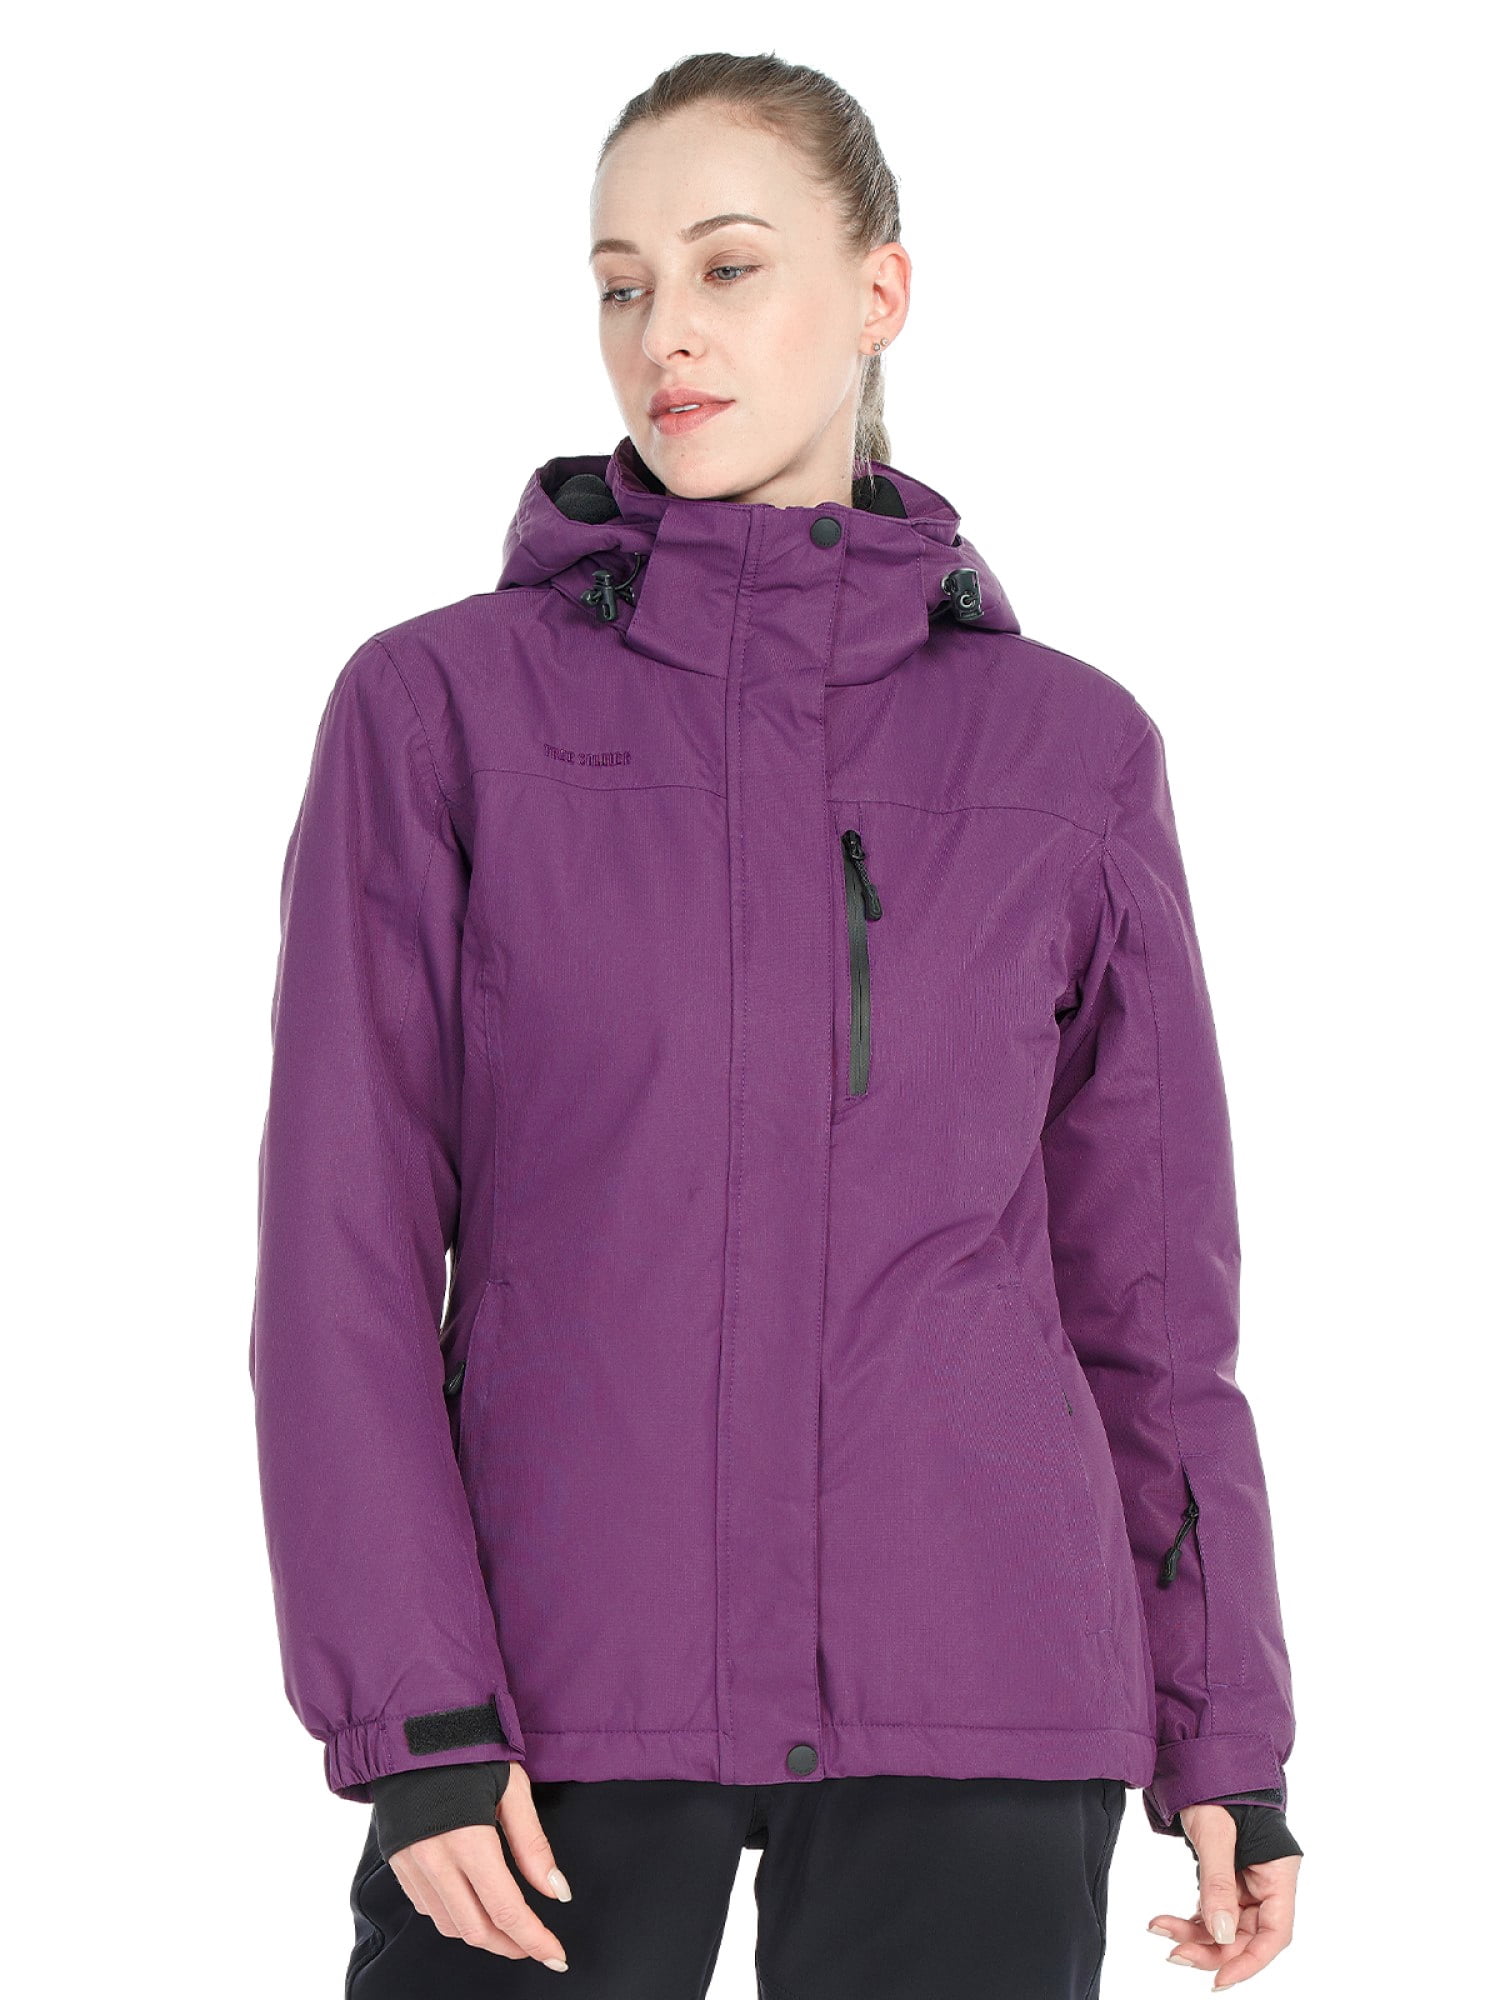 FREE SOLDIER Women's Waterproof Ski Jacket Fleece Warm Winter Rain Jacket Purple S - Walmart.com